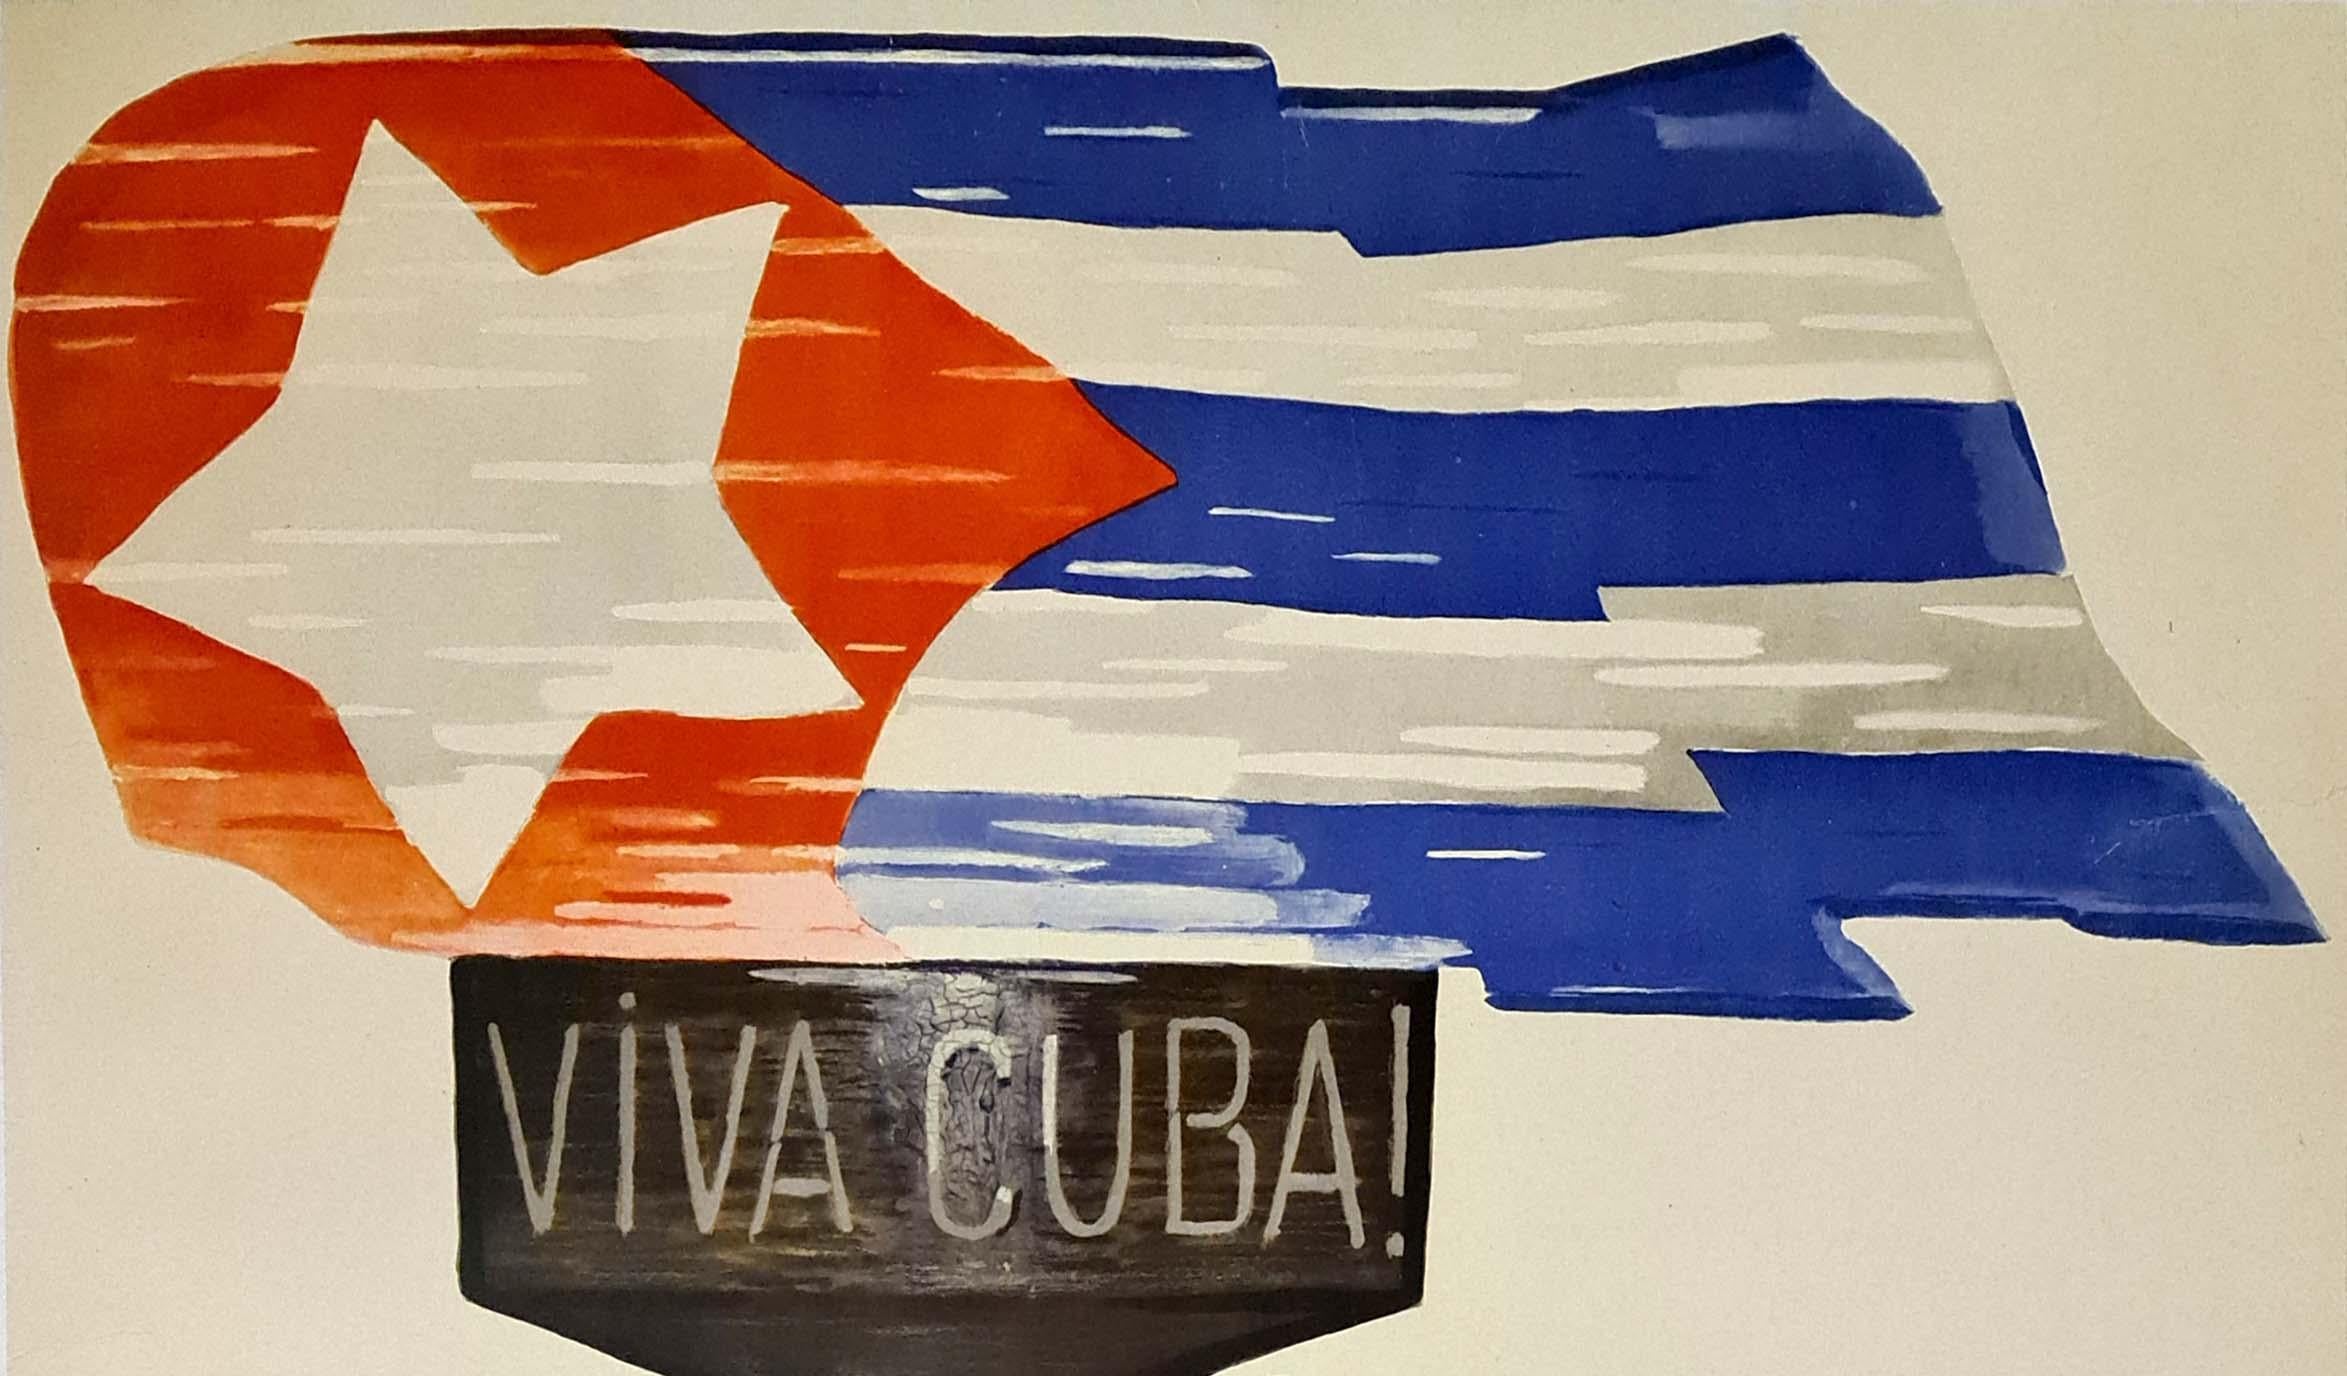 Belle affiche soviétique de Victor Koretsky (1909 - 1998) pour Cuba.
Parmi les affichistes de photomontage du XXe siècle, Viktor Borisovich Koretskii se distingue comme l'un des plus emblématiques. Sa carrière prolifique en Union soviétique a débuté